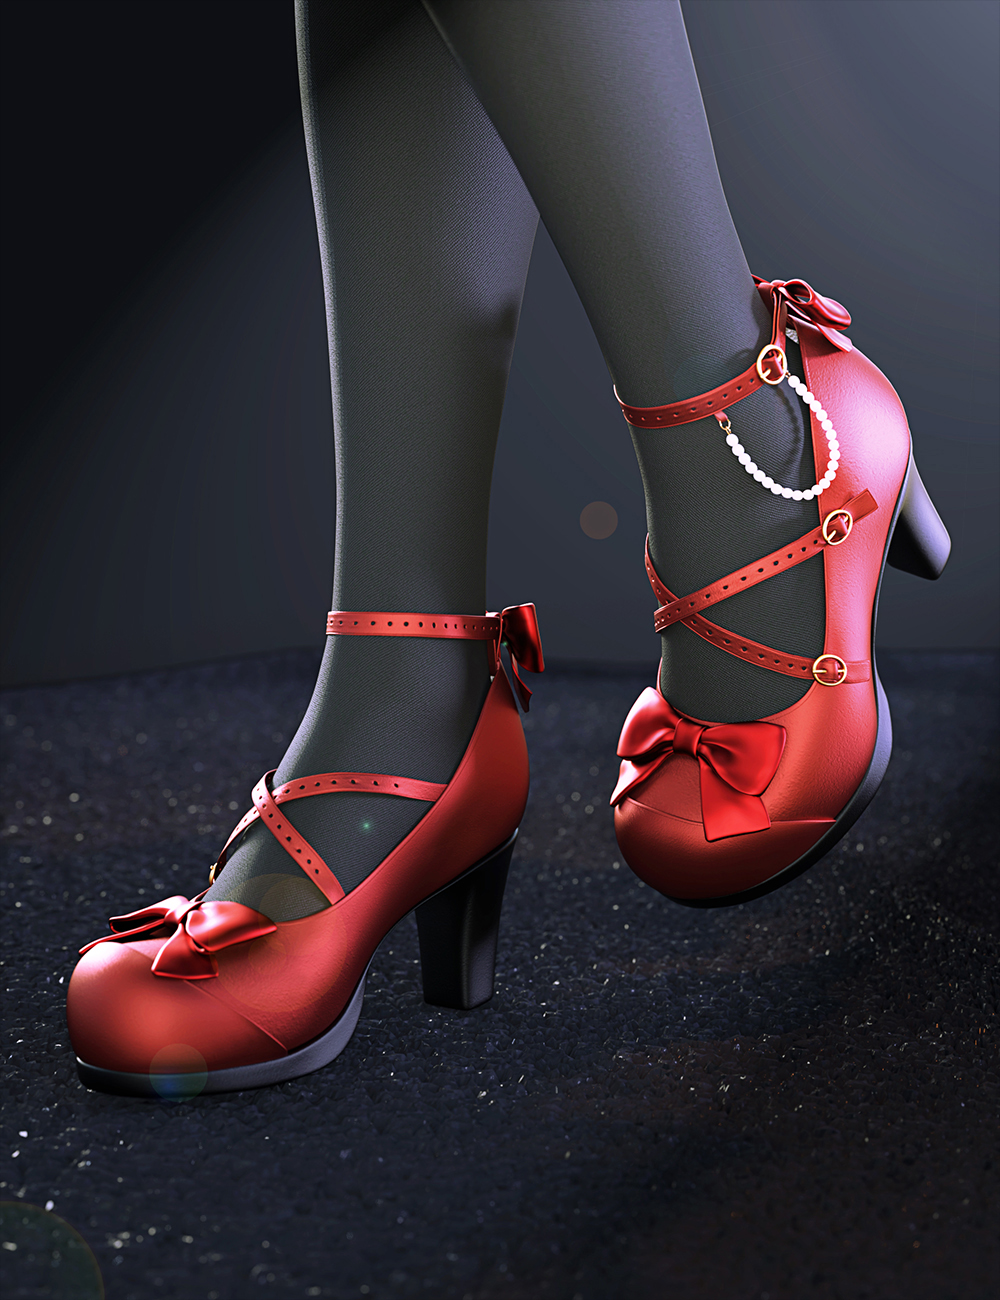 Sue Yee Cute High Heels for Genesis 8 and 8.1 Females by: Sue Yee, 3D Models by Daz 3D